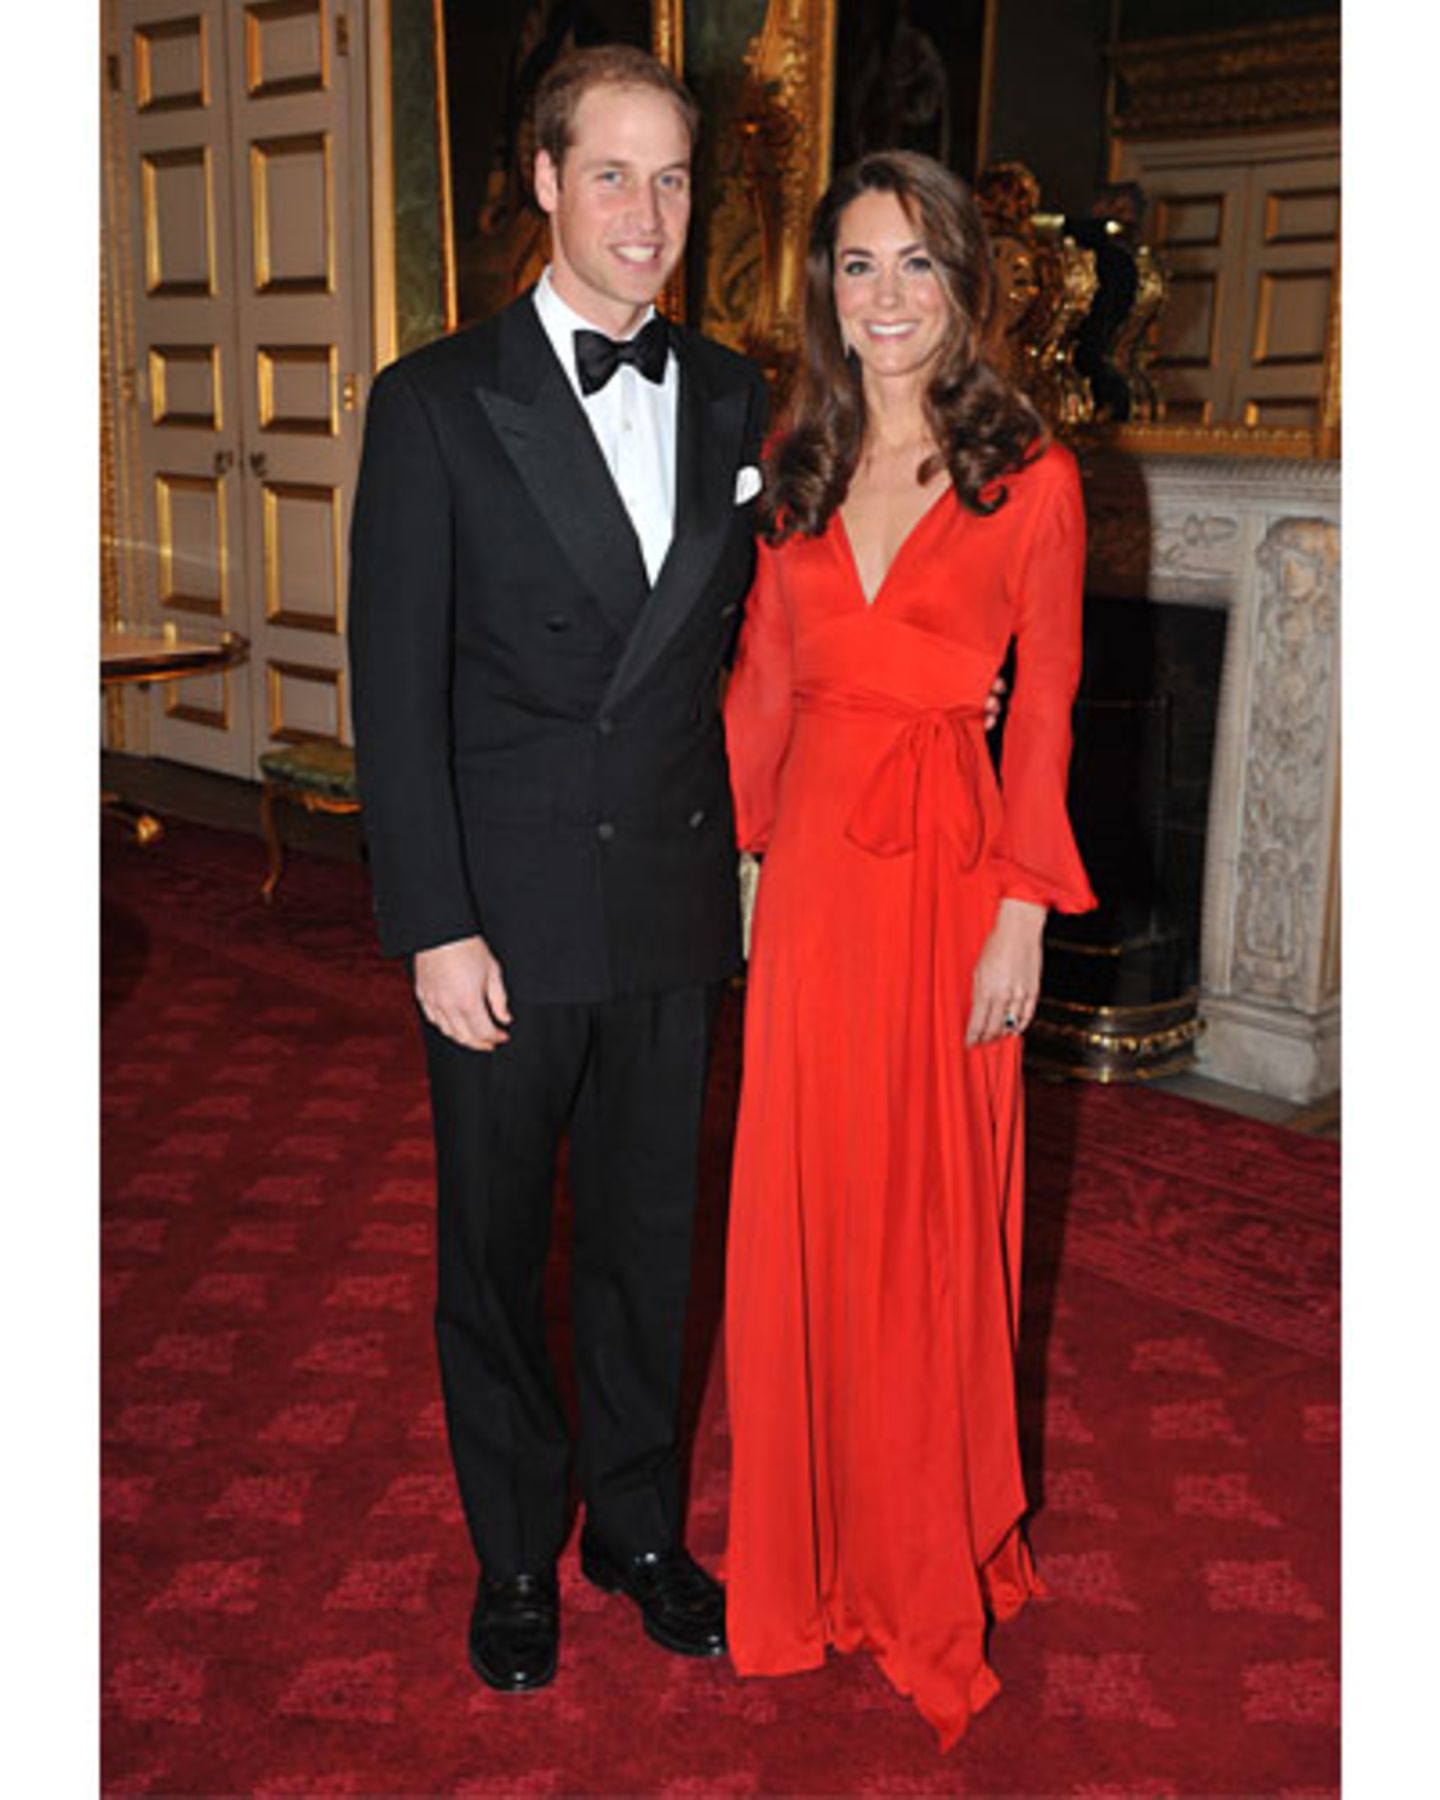 Zur Charity-Gala im St James's Palace bringt Catherine ihr strahlendes Lächeln, eine rote Traumrobe und das wie immer perfekt fallende Haar mit. Ganz ehrlich, liebe Duchess of Cambridge, besser geht's nicht!